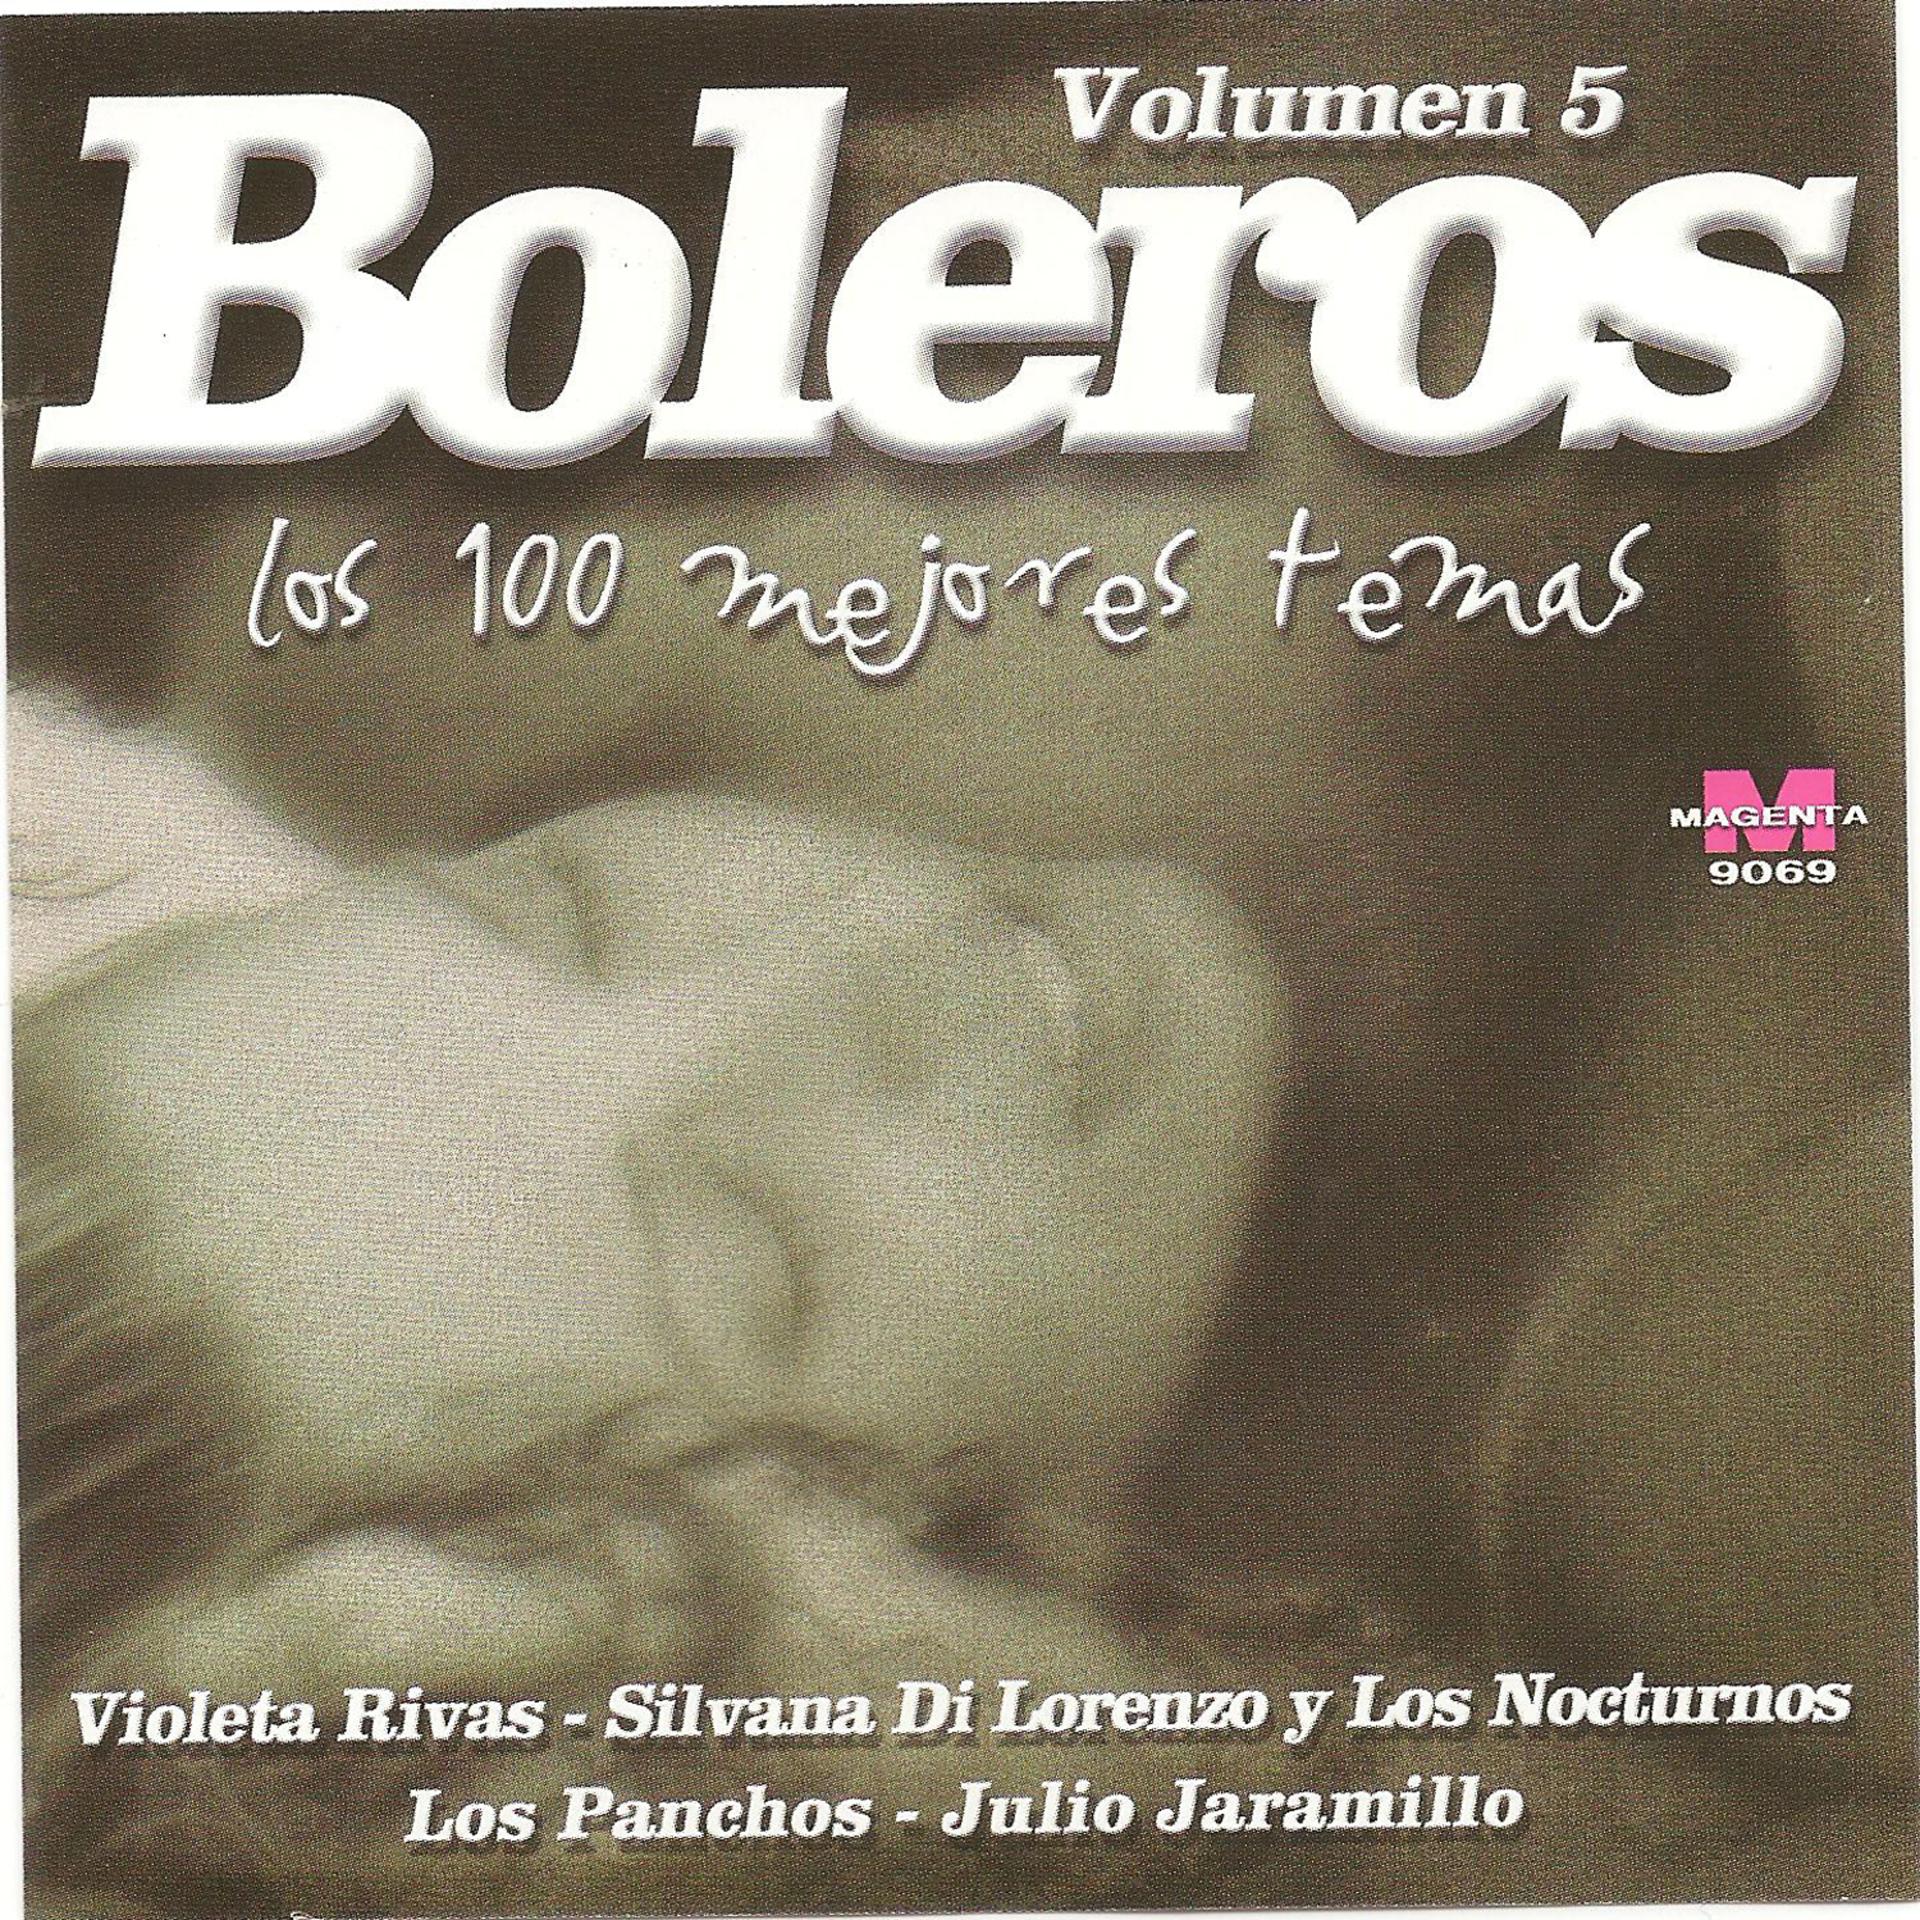 Постер альбома Boleros -Los 100 mejores temas- Vol 5